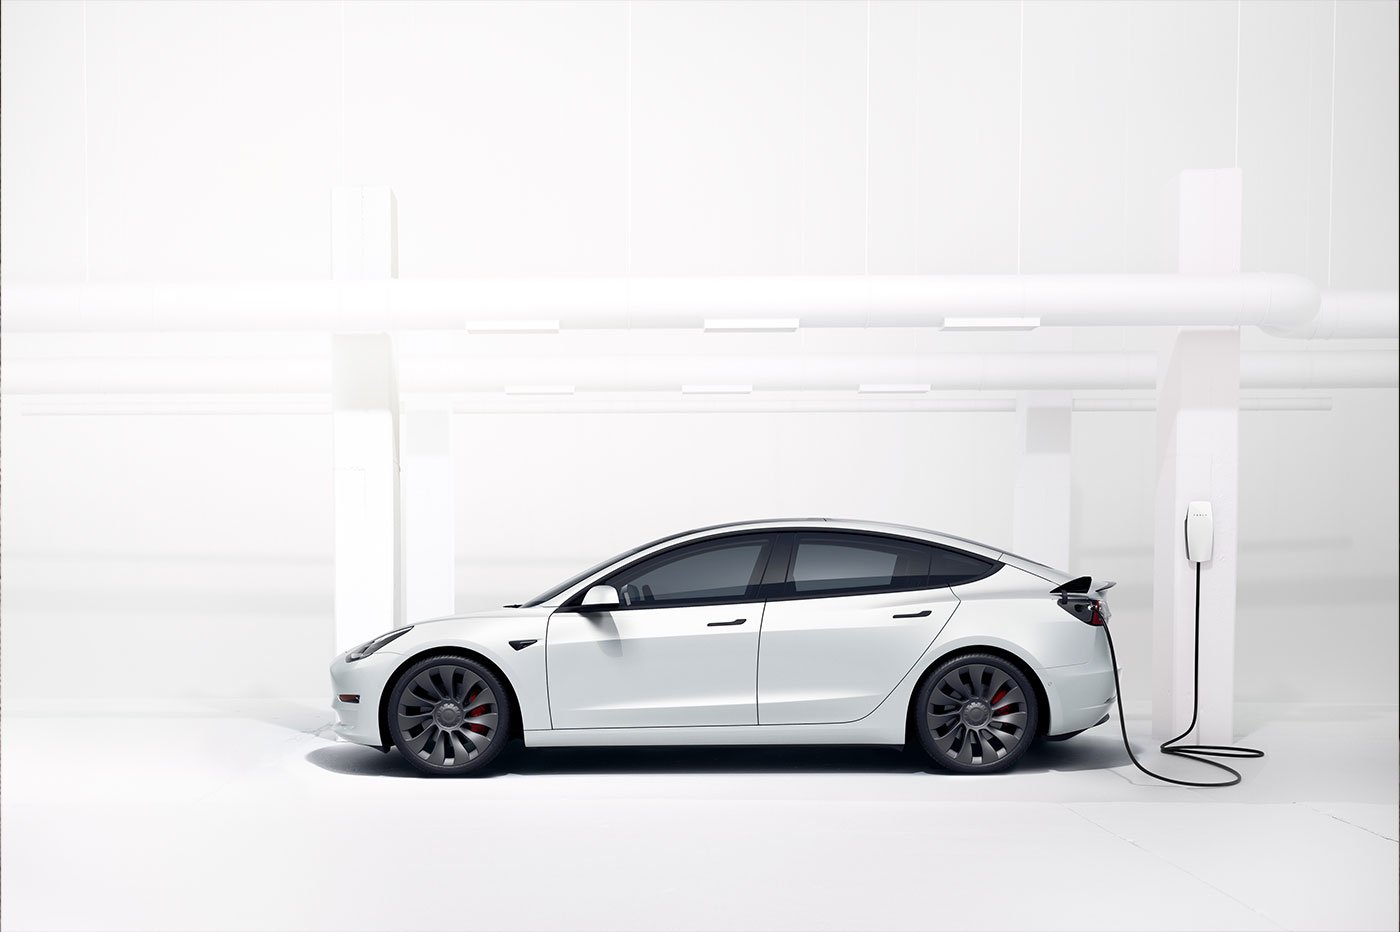 Forte hausse des tarifs pour les Superchargeurs Tesla